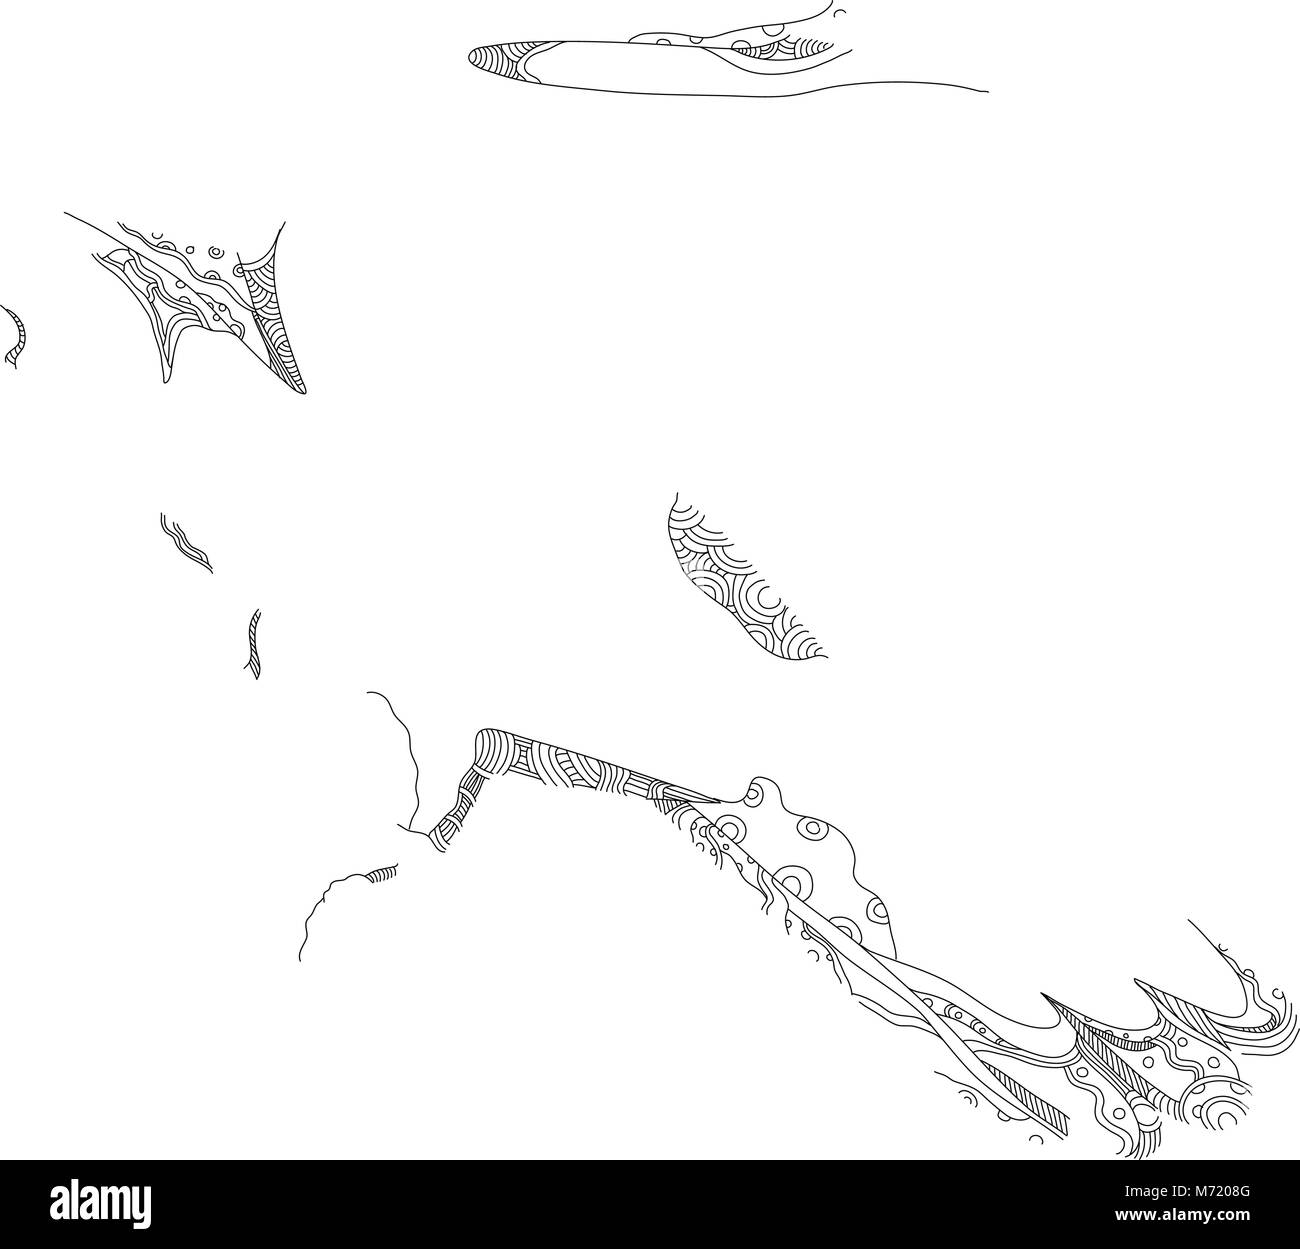 Illustration de l'art doodle, autour des palombes Accipiter gentilis, un grand raptor en famille Accipitridae, qui inclut d'autres diurnes existantes rapt Illustration de Vecteur